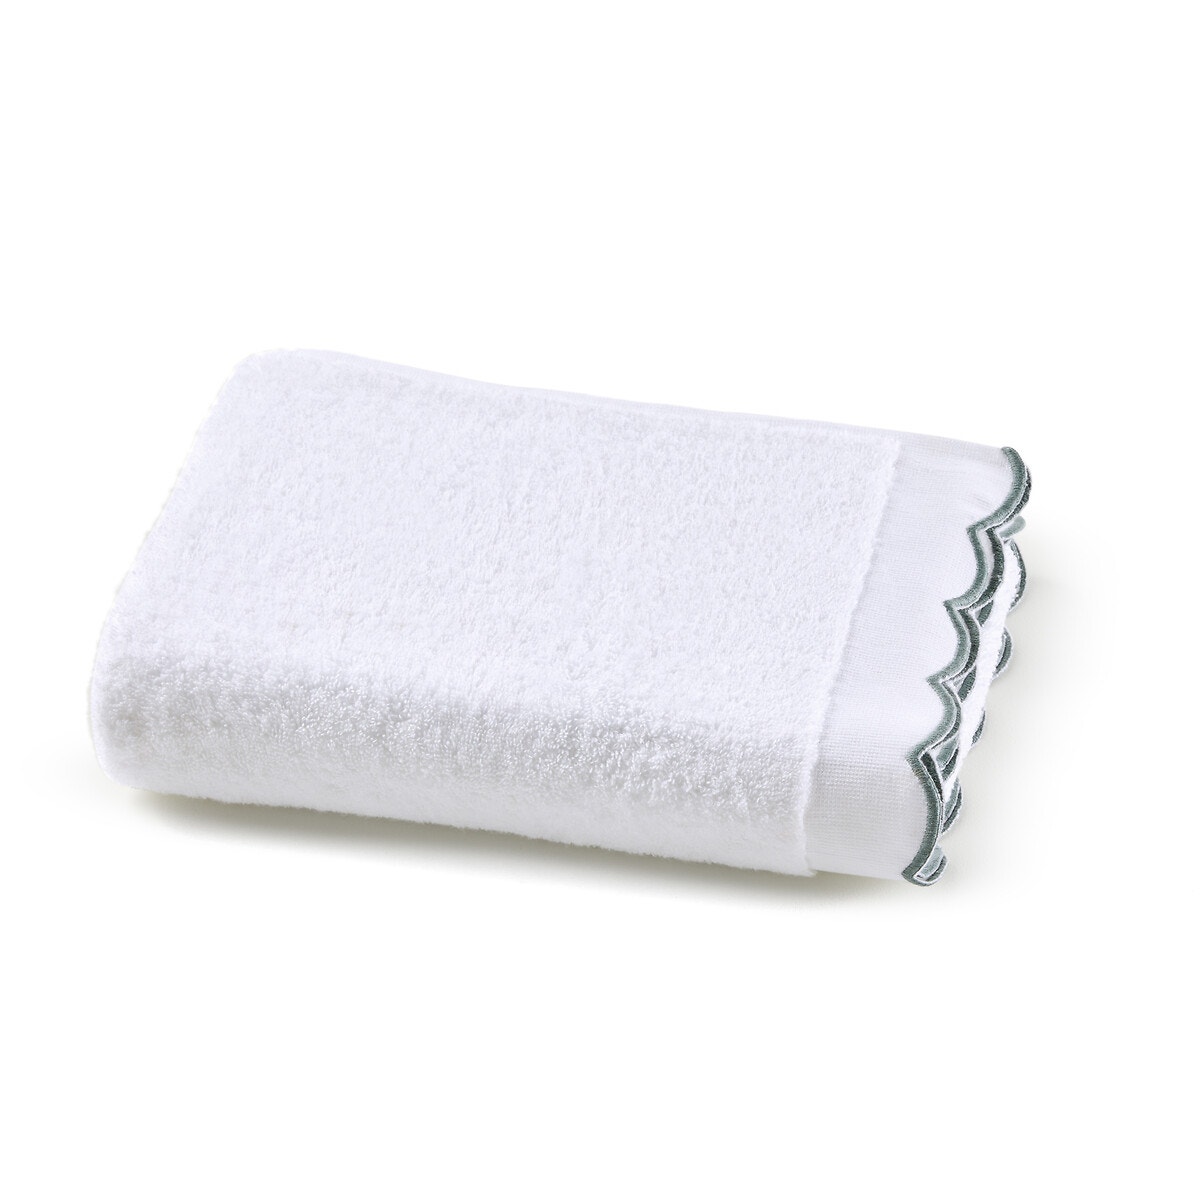 Σπίτι > Λευκά είδη > Μπάνιο > Πετσέτες μπάνιου Μονόχρωμη πετσέτα μπάνιου 500g 70x140 cm